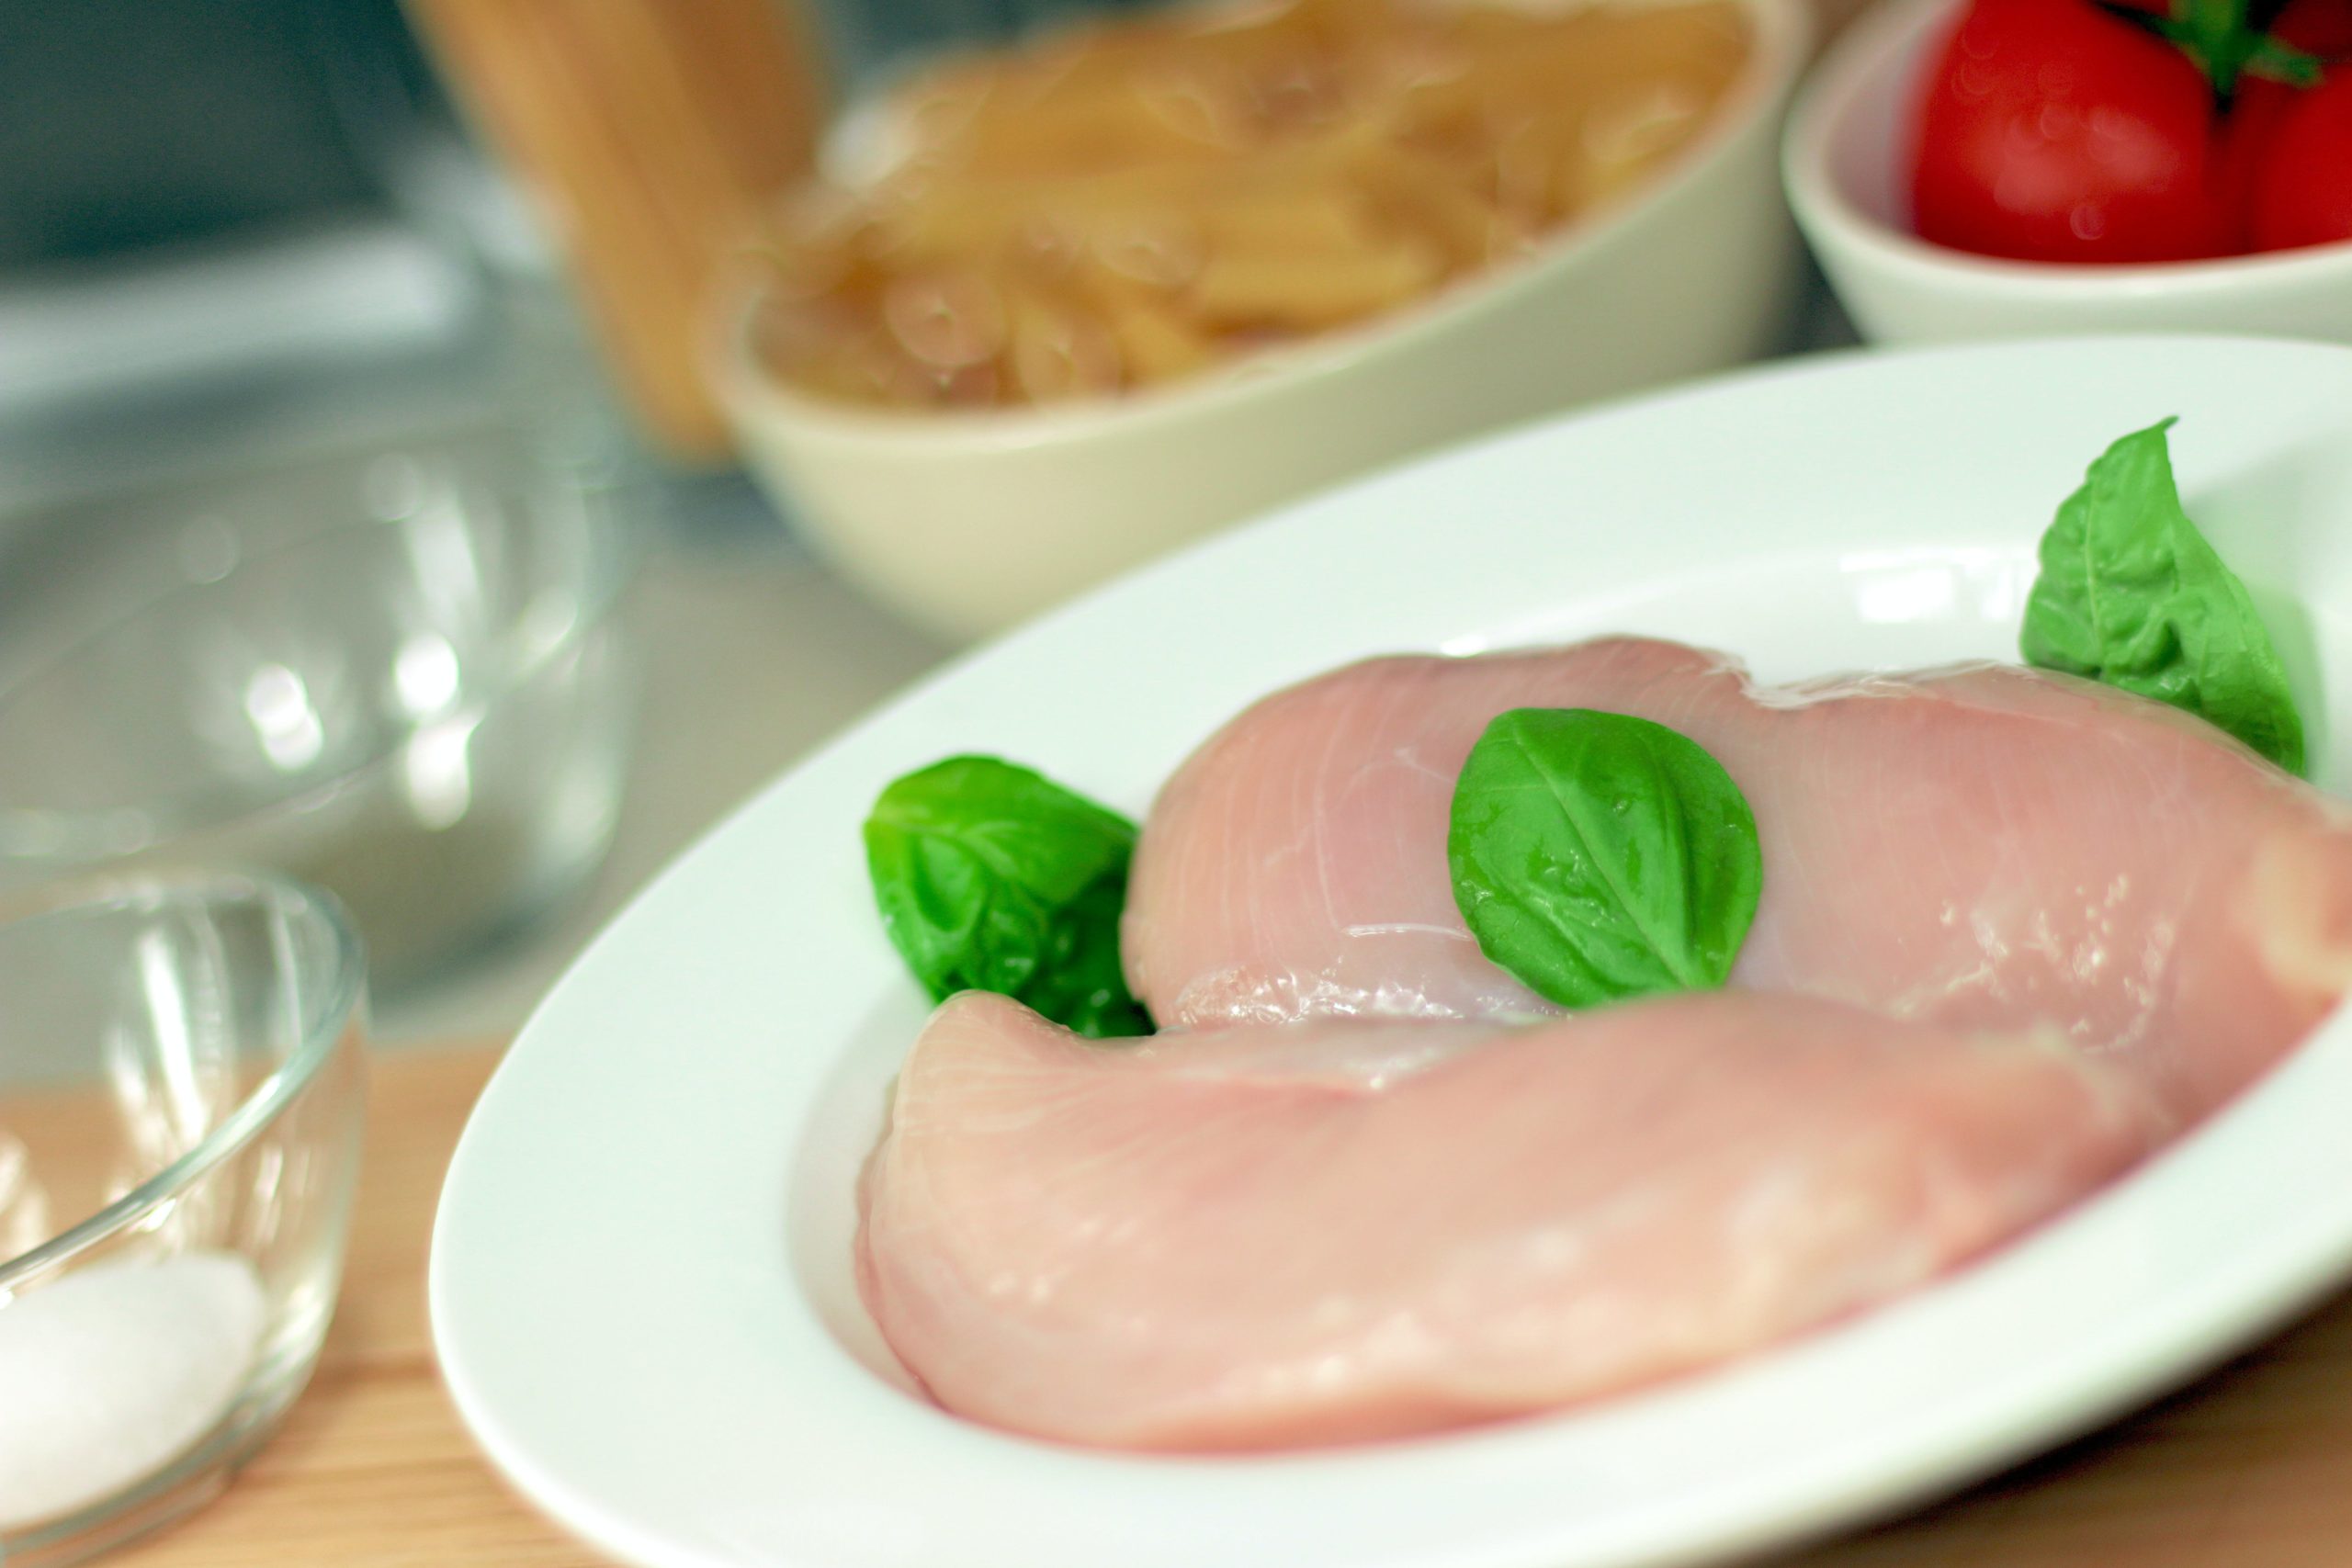 Κοτόπουλο: Τα 6 πράγματα που πρέπει να προσέχεις στη συντήρηση του στην καταψυξη και στο ψυγείο 